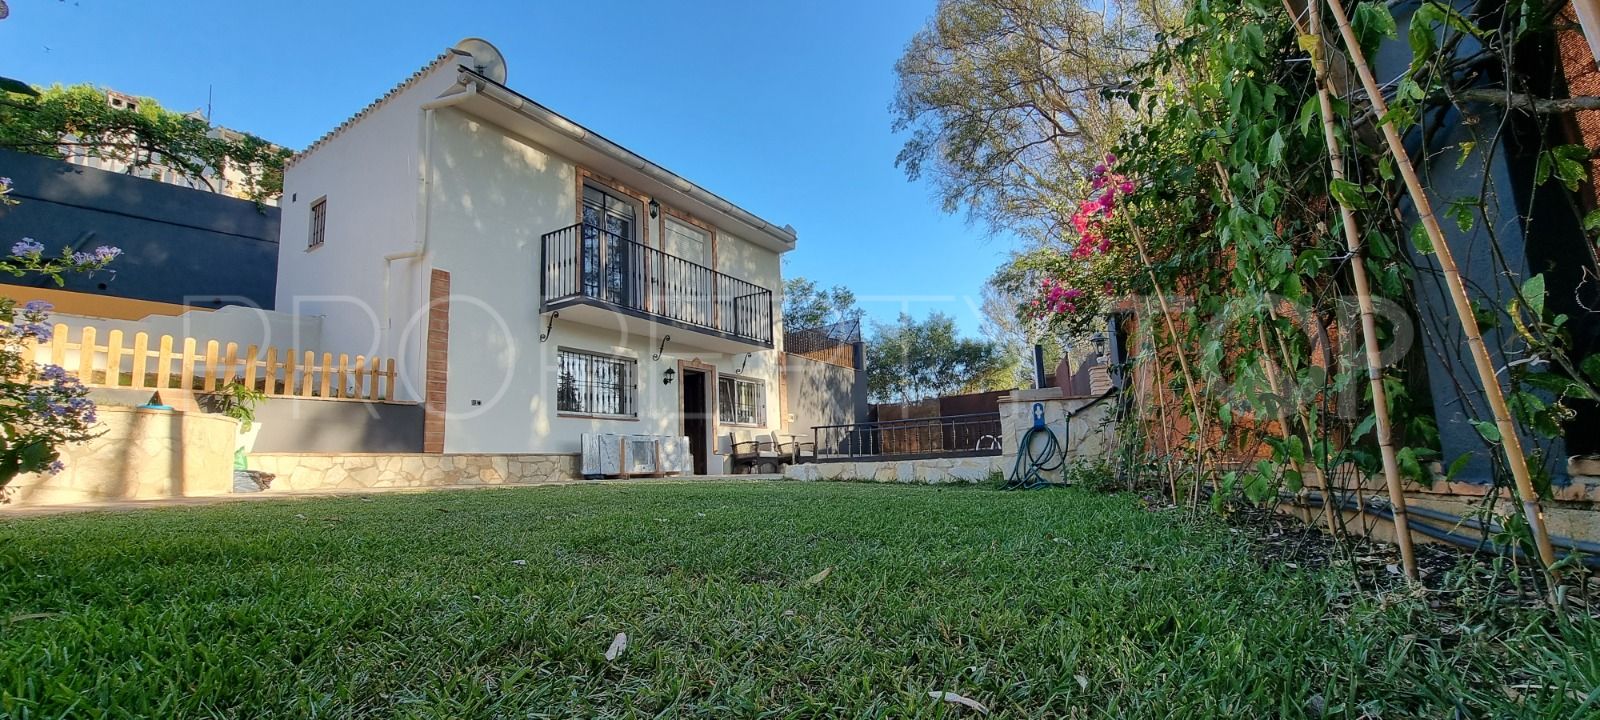 Villa for sale in El Rosario with 2 bedrooms